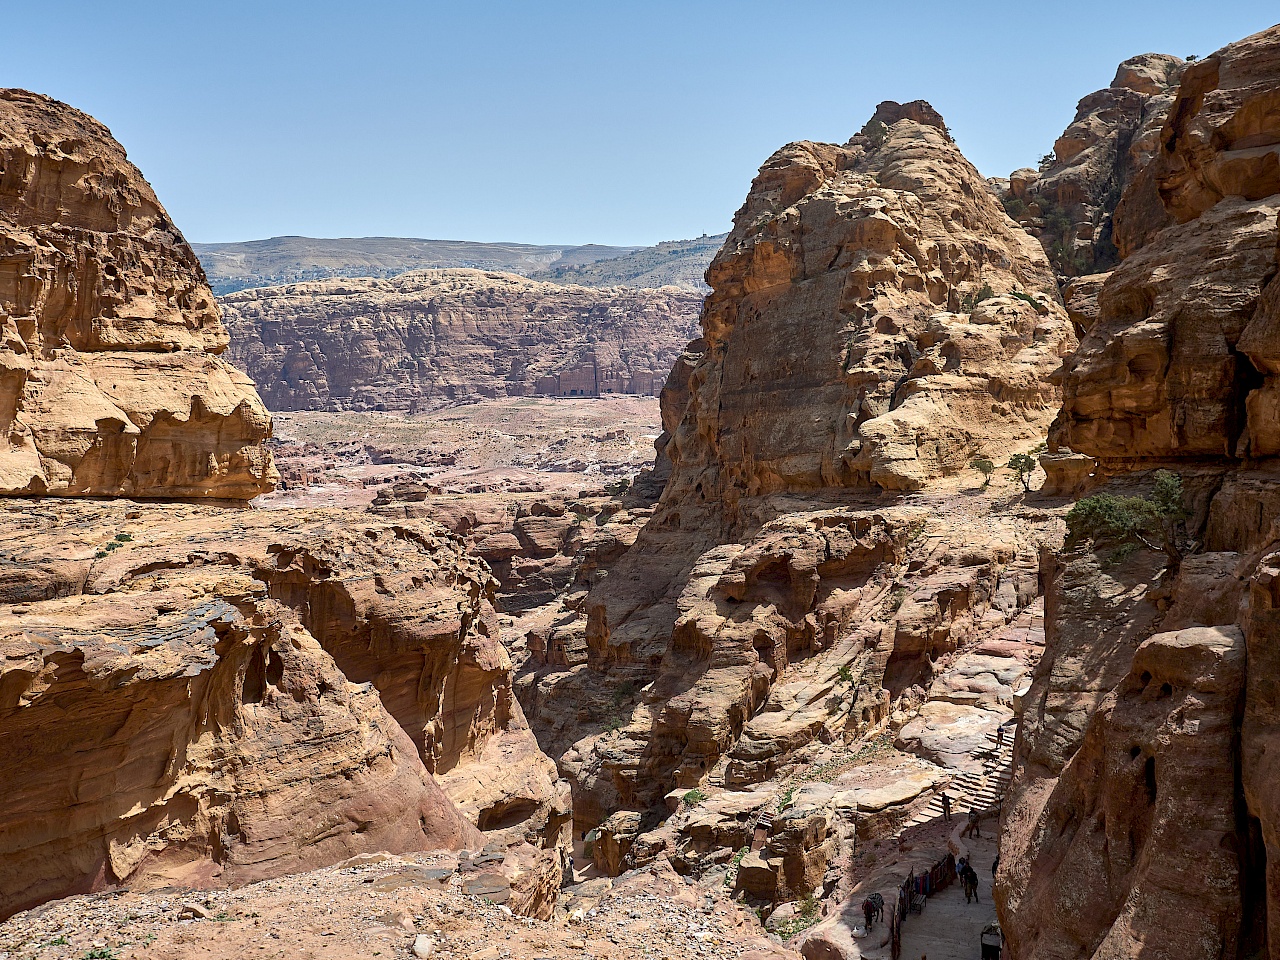 Aussicht auf dem Weg zum Kloster in Petra (Jordanien) - Königsgräber im Hintergrund zu sehen